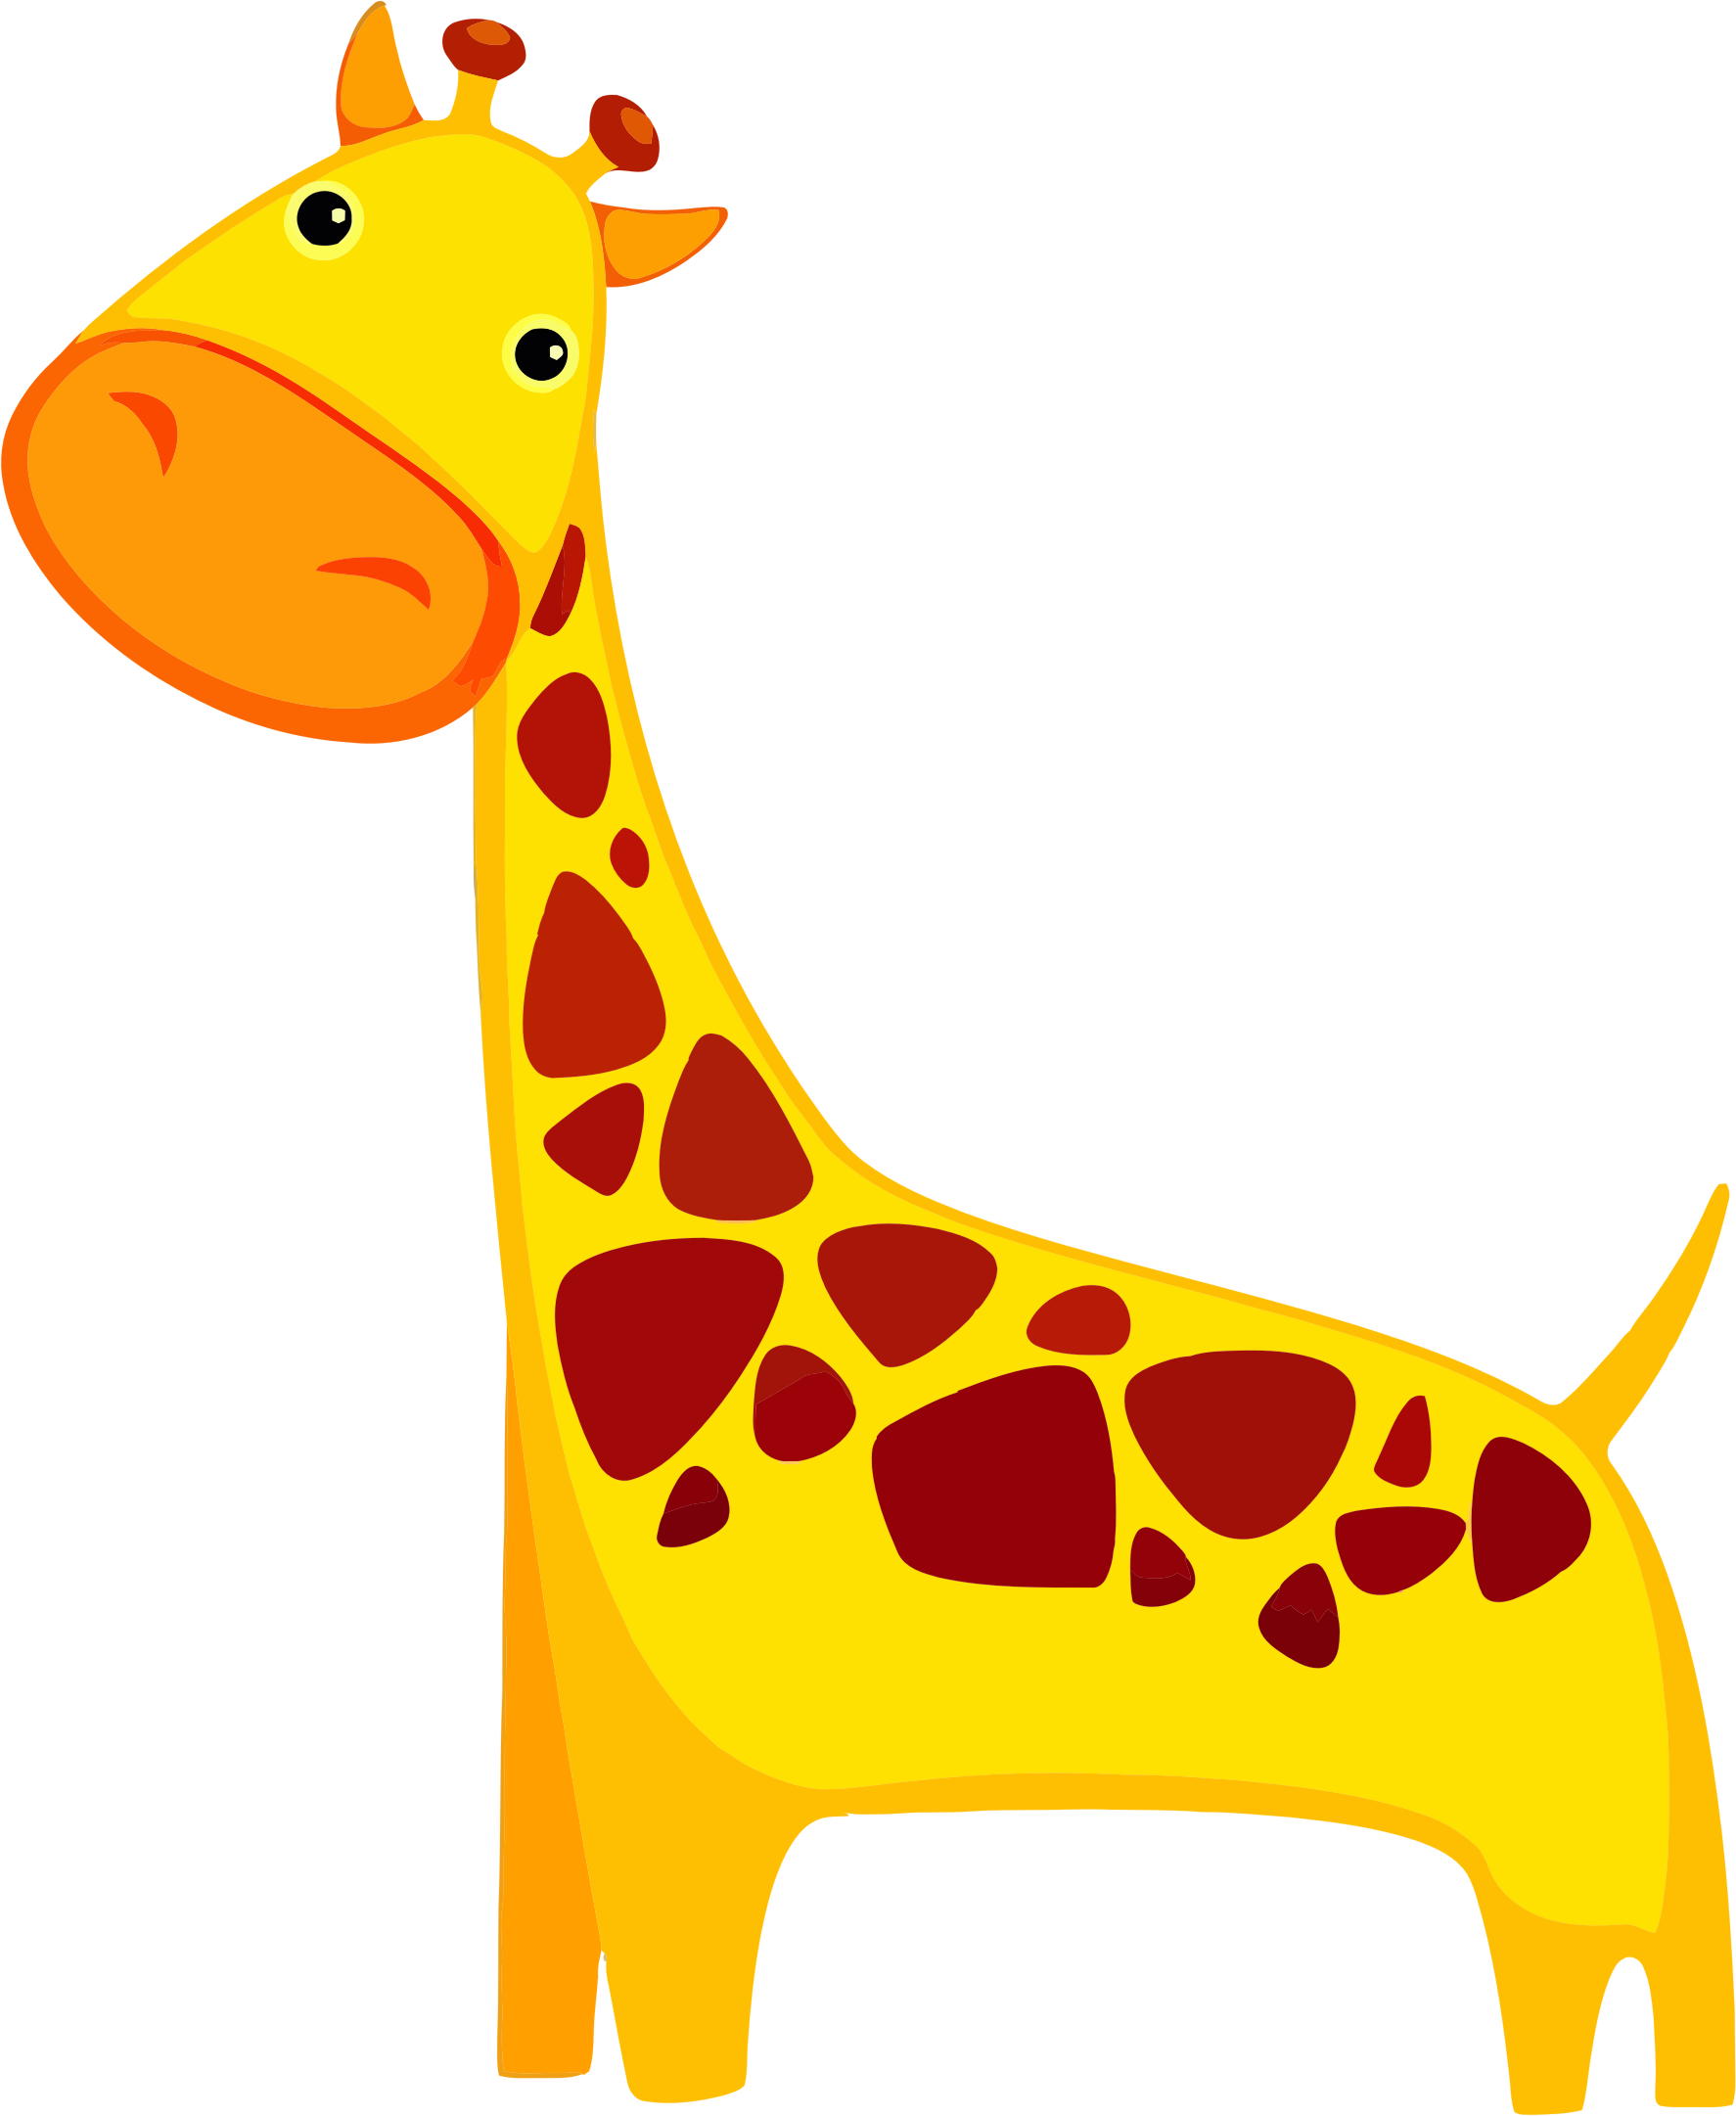 Giraffe difference